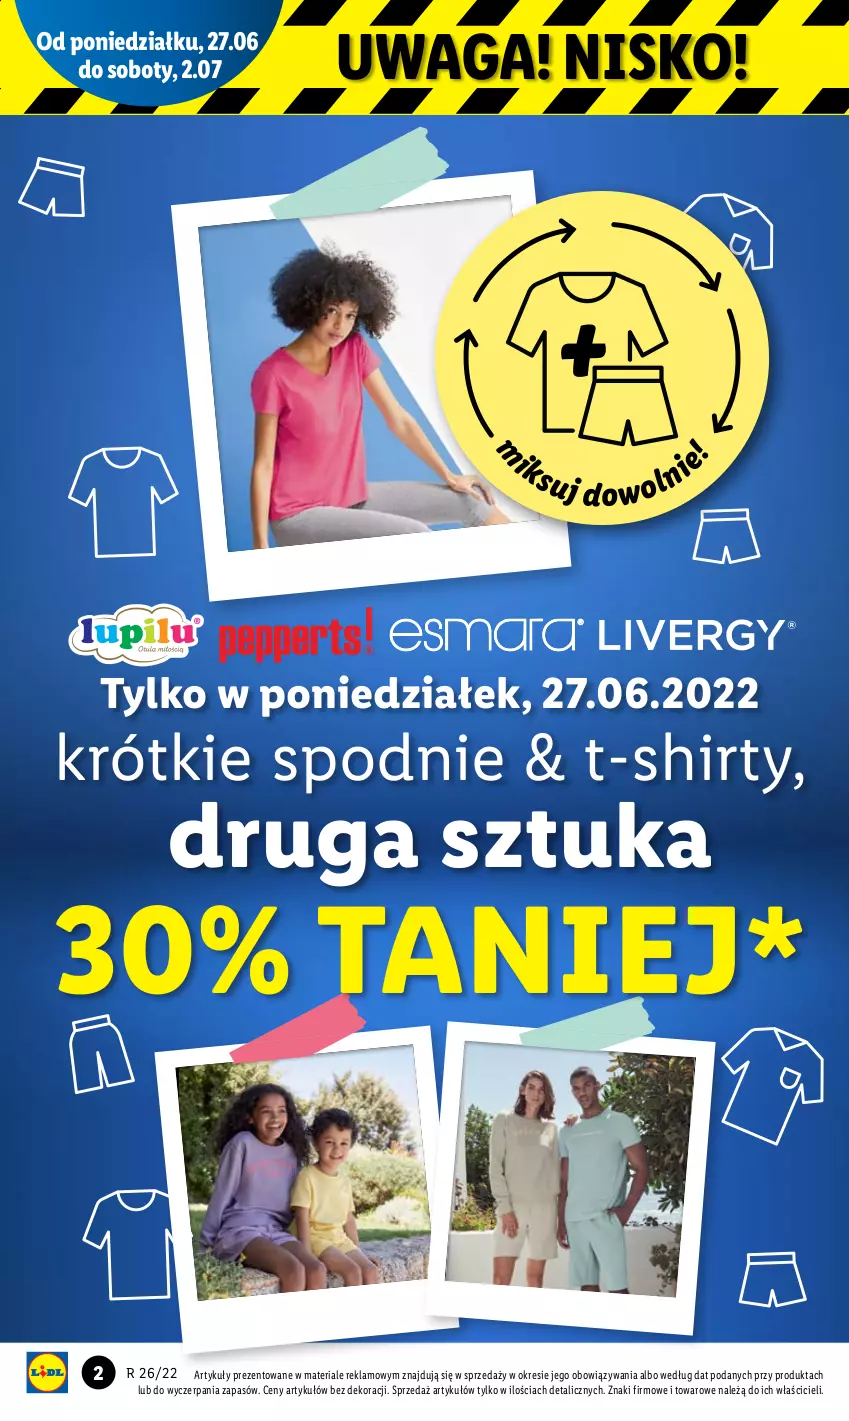 Gazetka promocyjna Lidl - GAZETKA - ważna 27.06 do 02.07.2022 - strona 2 - produkty: Spodnie, T-shirt, Waga